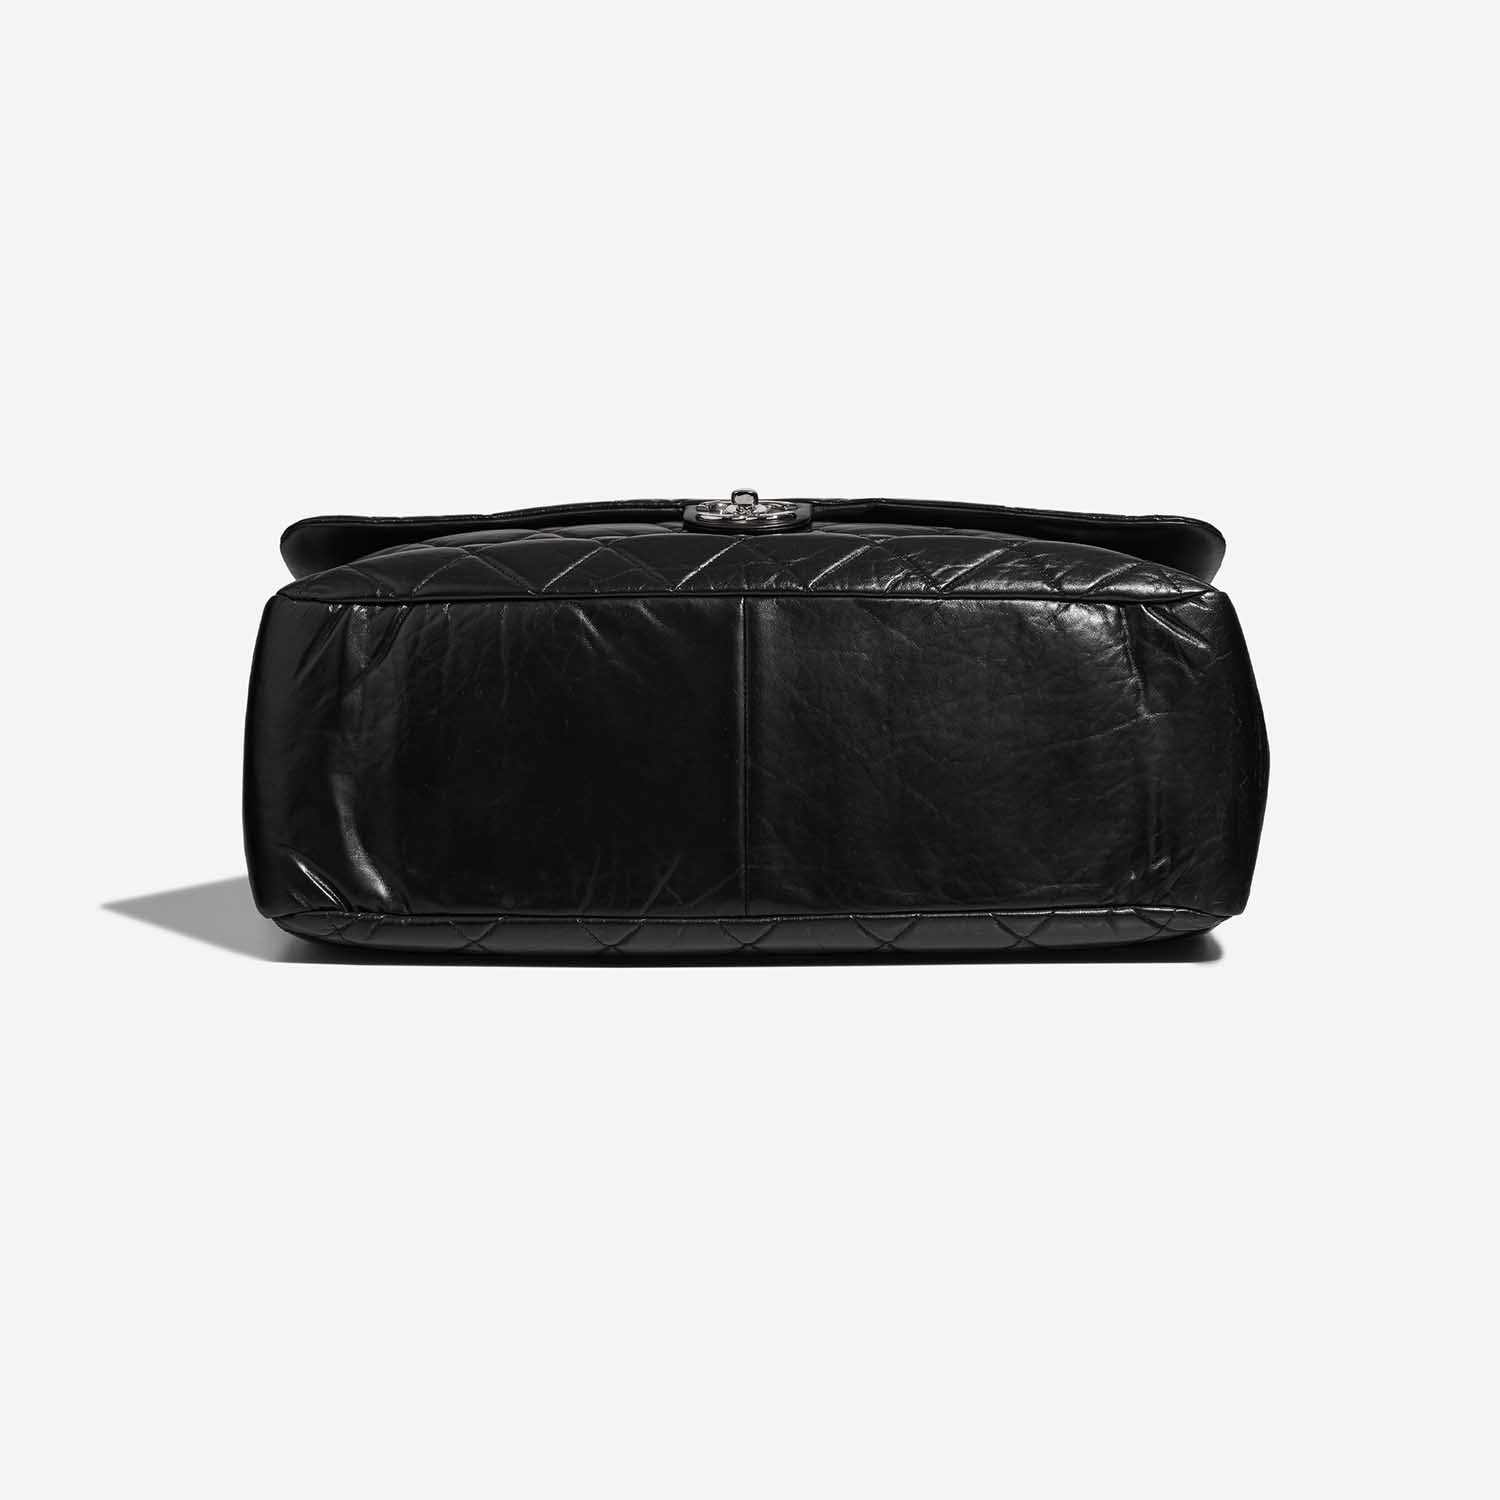 Chanel ExpressBowling Black Bottom | Verkaufen Sie Ihre Designertasche auf Saclab.com